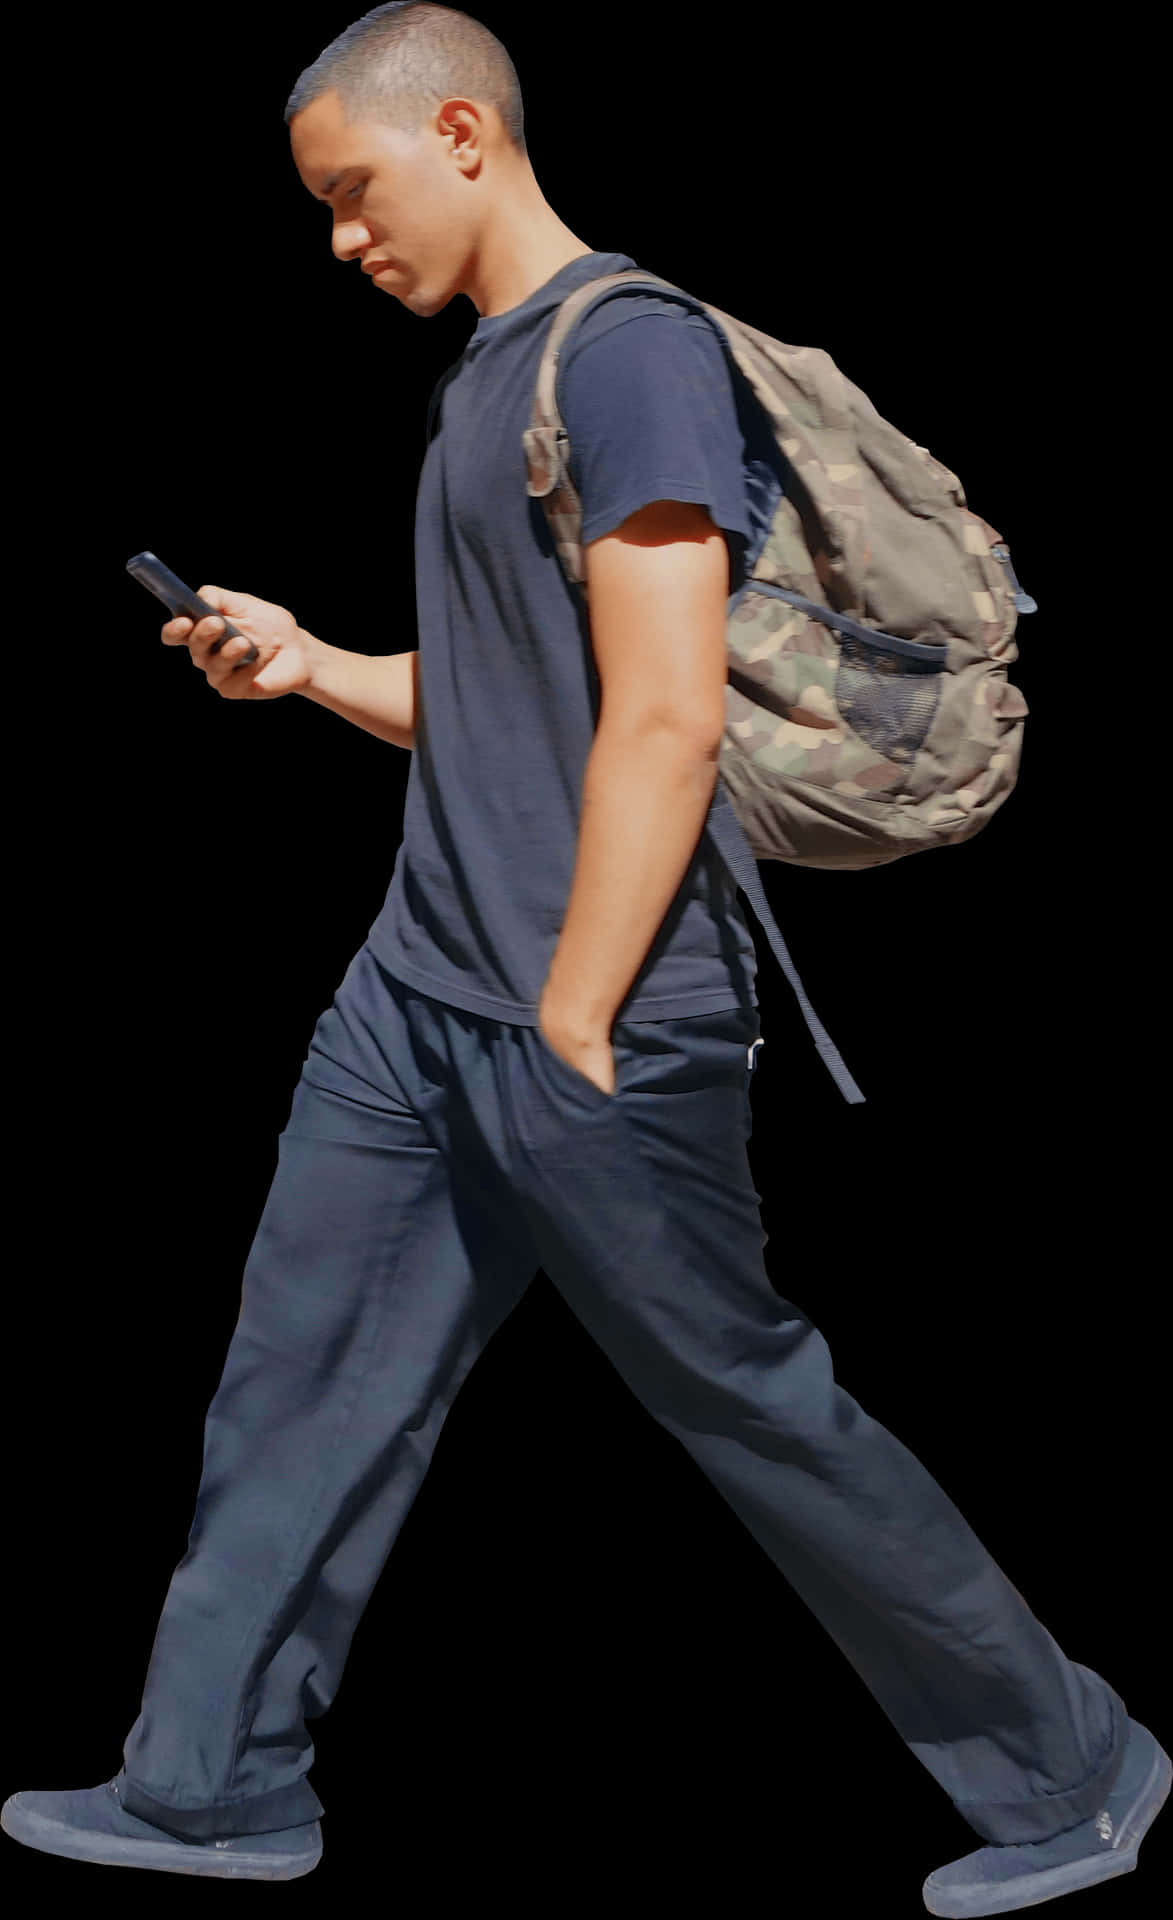 Man Walking While Using Phone Wallpaper